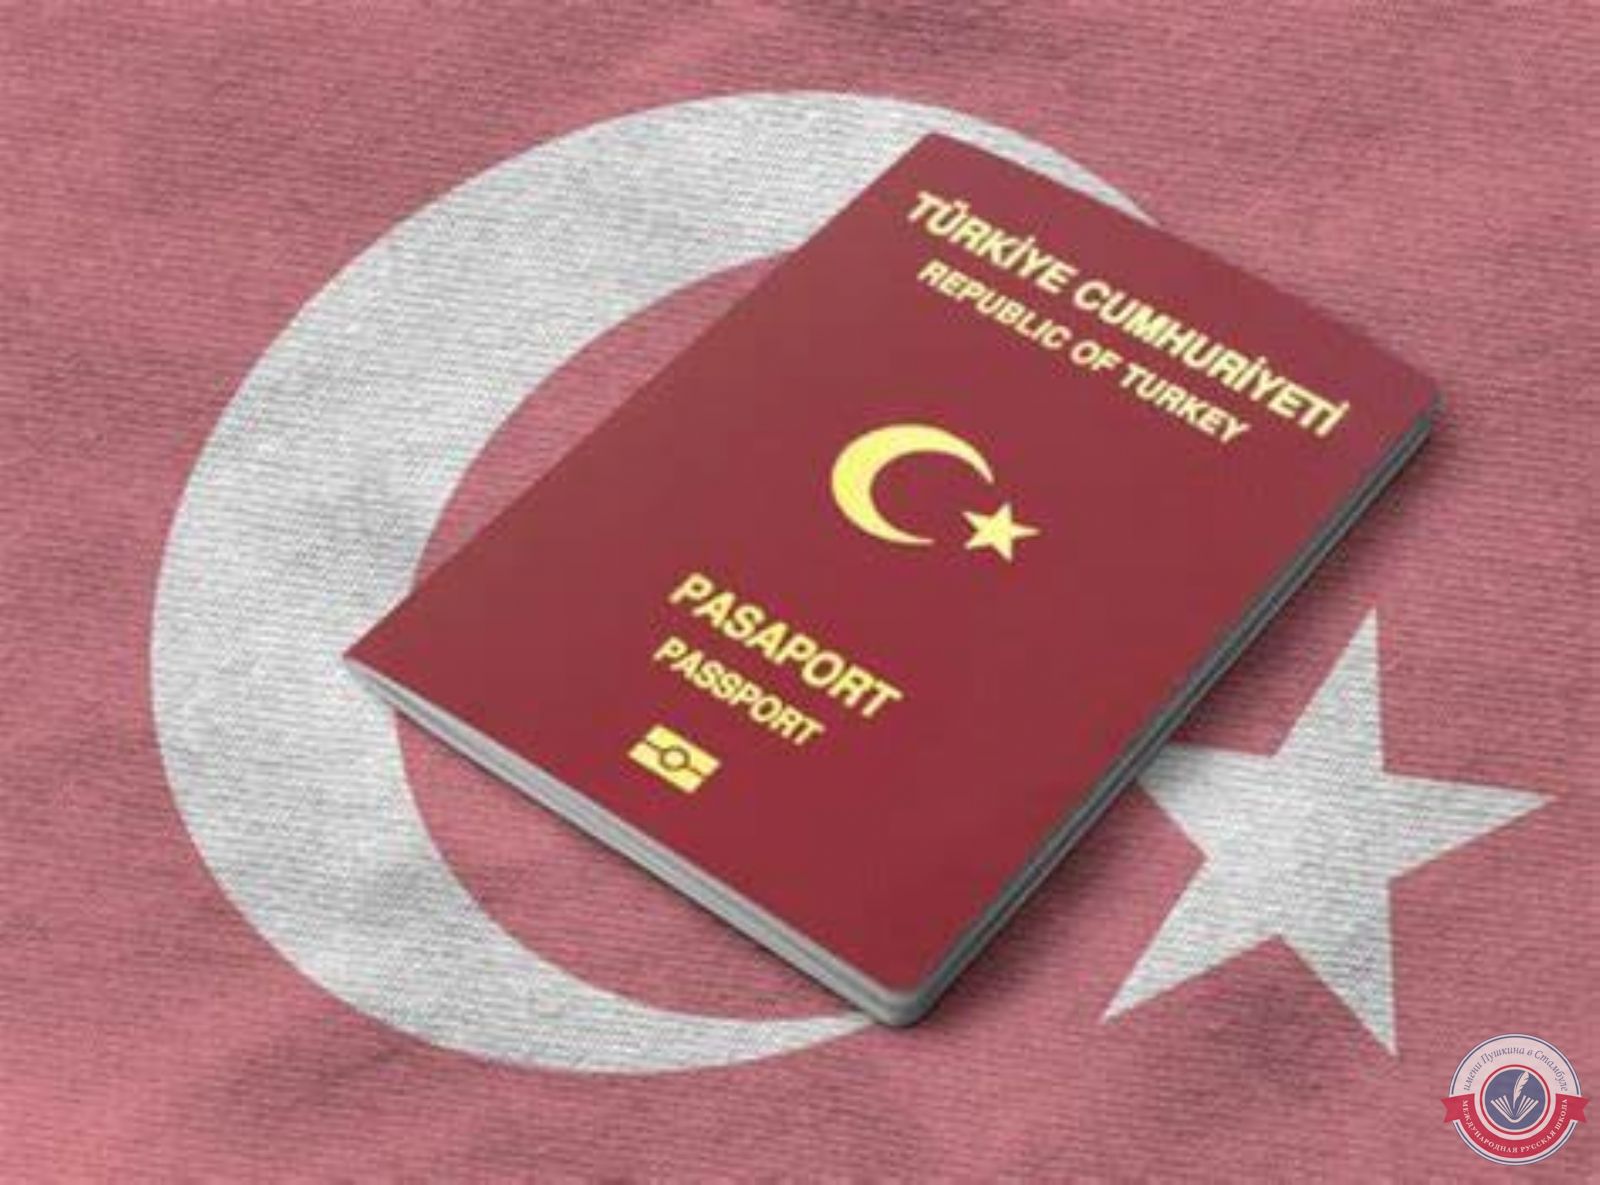 Внимание родителей, дети которых имеют гражданство Турецкой Республики!